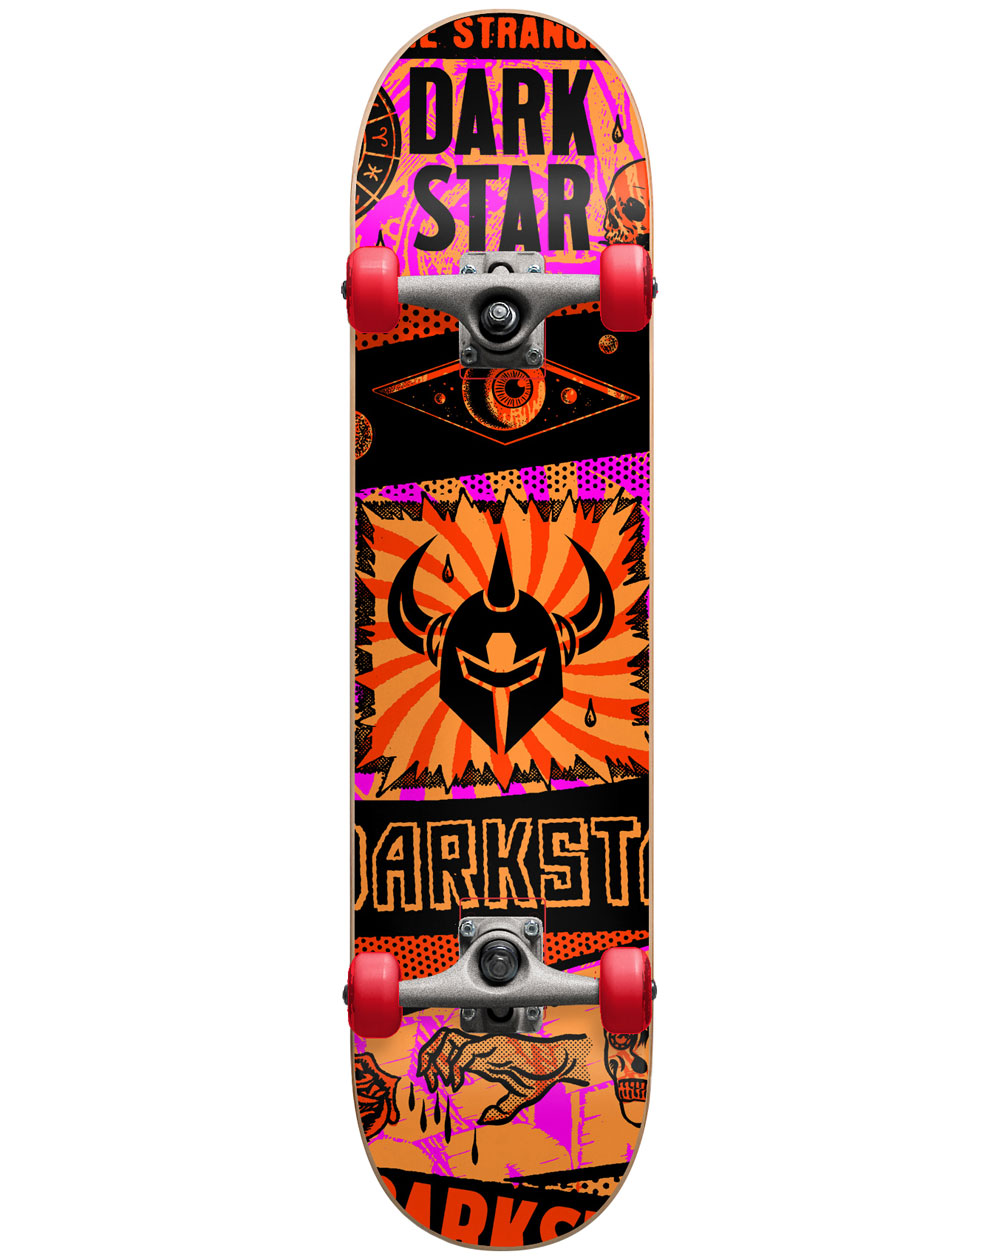 Darkstar Skateboard Completo Collapse 7.875" Orange